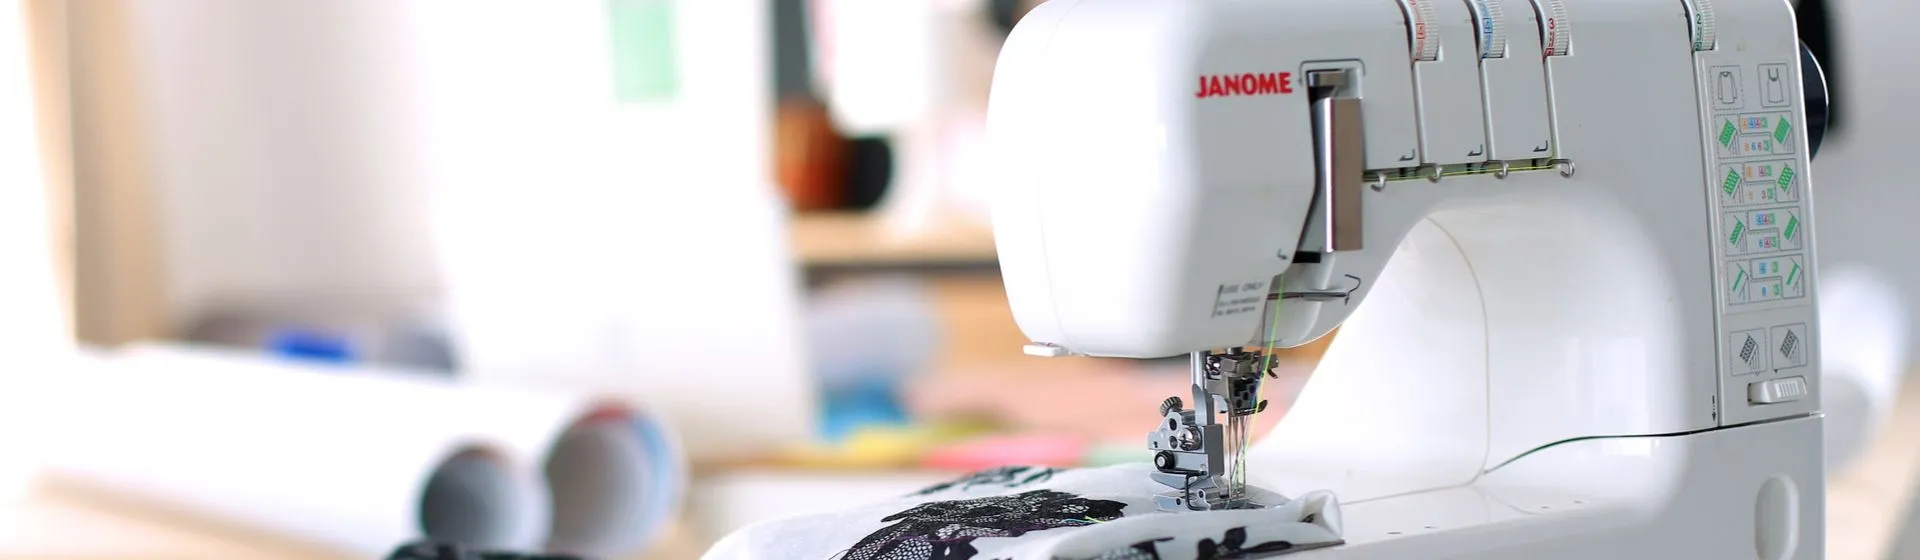 Melhor máquina de costura doméstica: confira 10 modelos e escolha o melhor